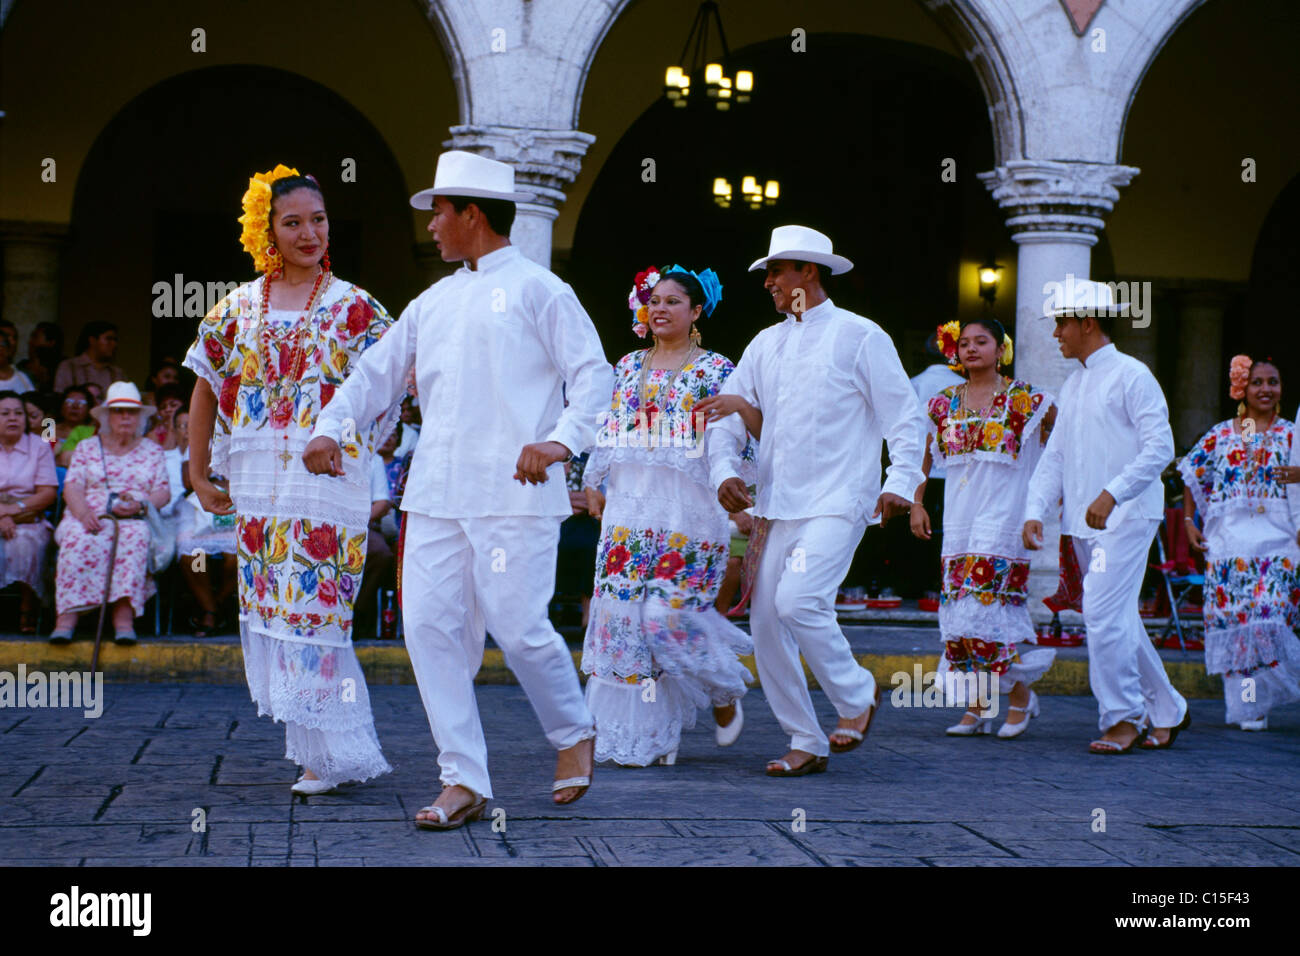 Vaqueria traditioneller Tanz, Merida, Yucatan, Mexiko Stockfoto